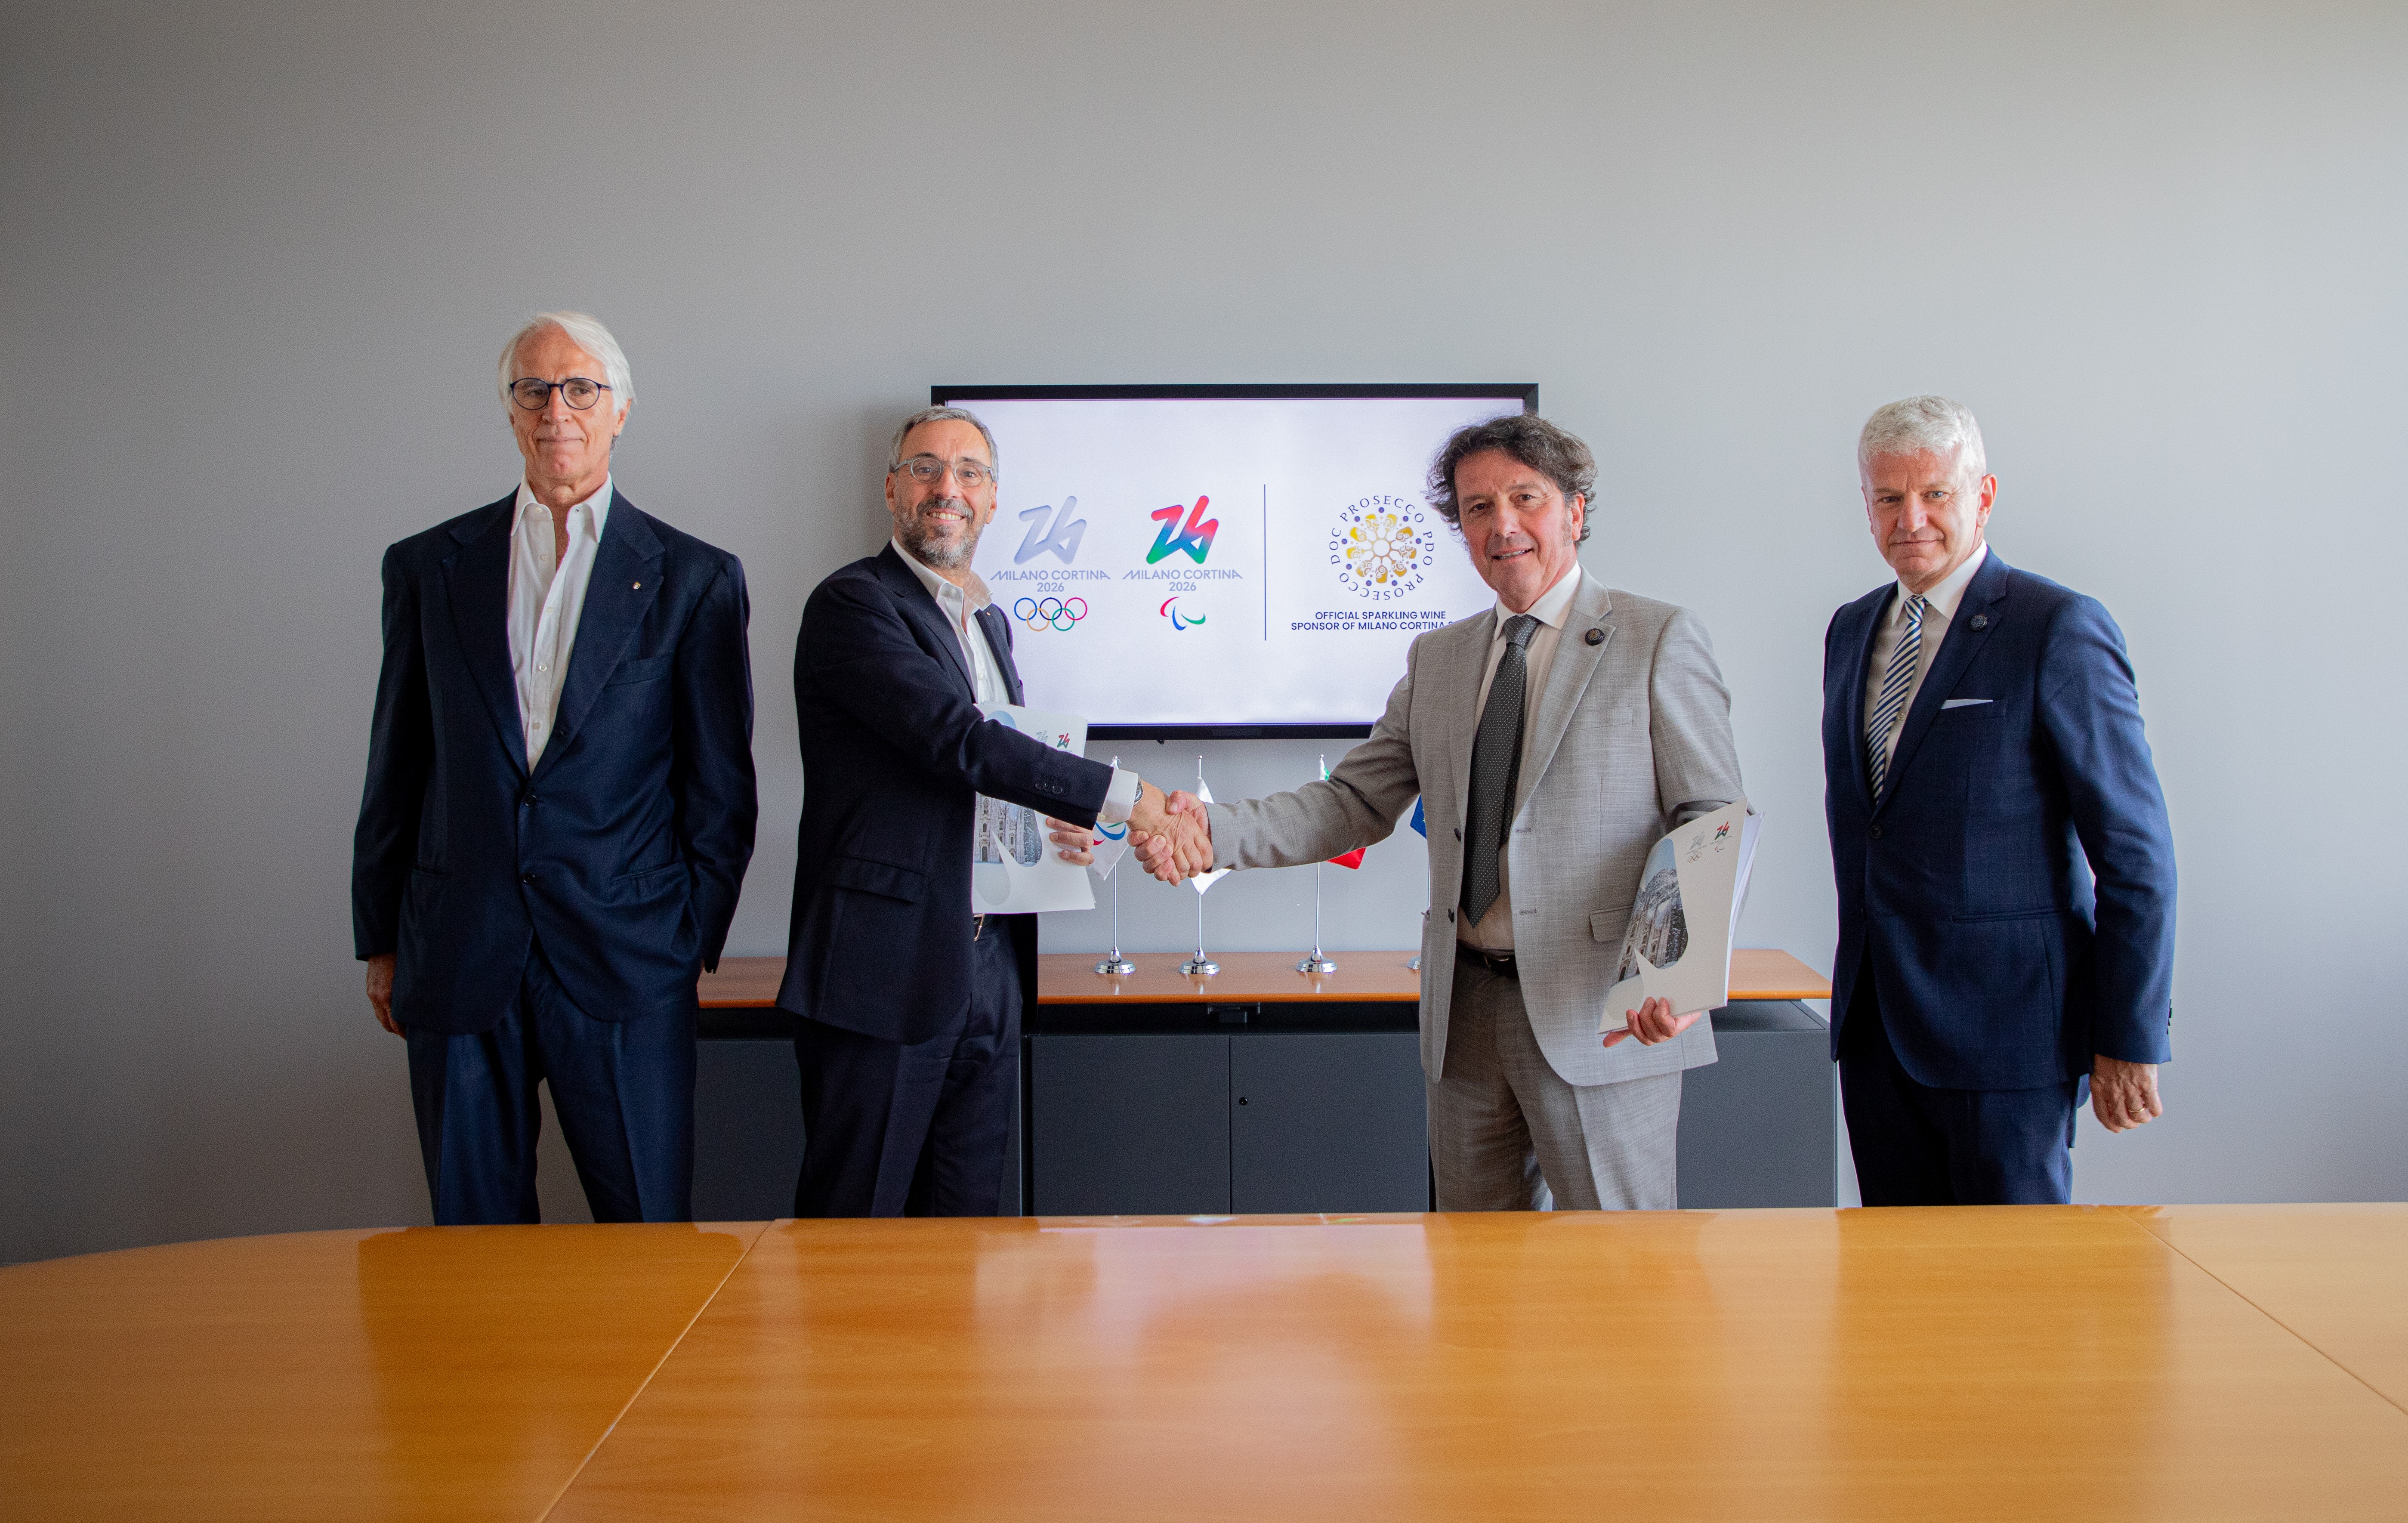 Foto von Andrea Varnier, Geschäftsführer von Mailand Cortina 2026 und Stefano Zanette, Präsident des Konsortiums Prosecco DOC und Luca Giavi